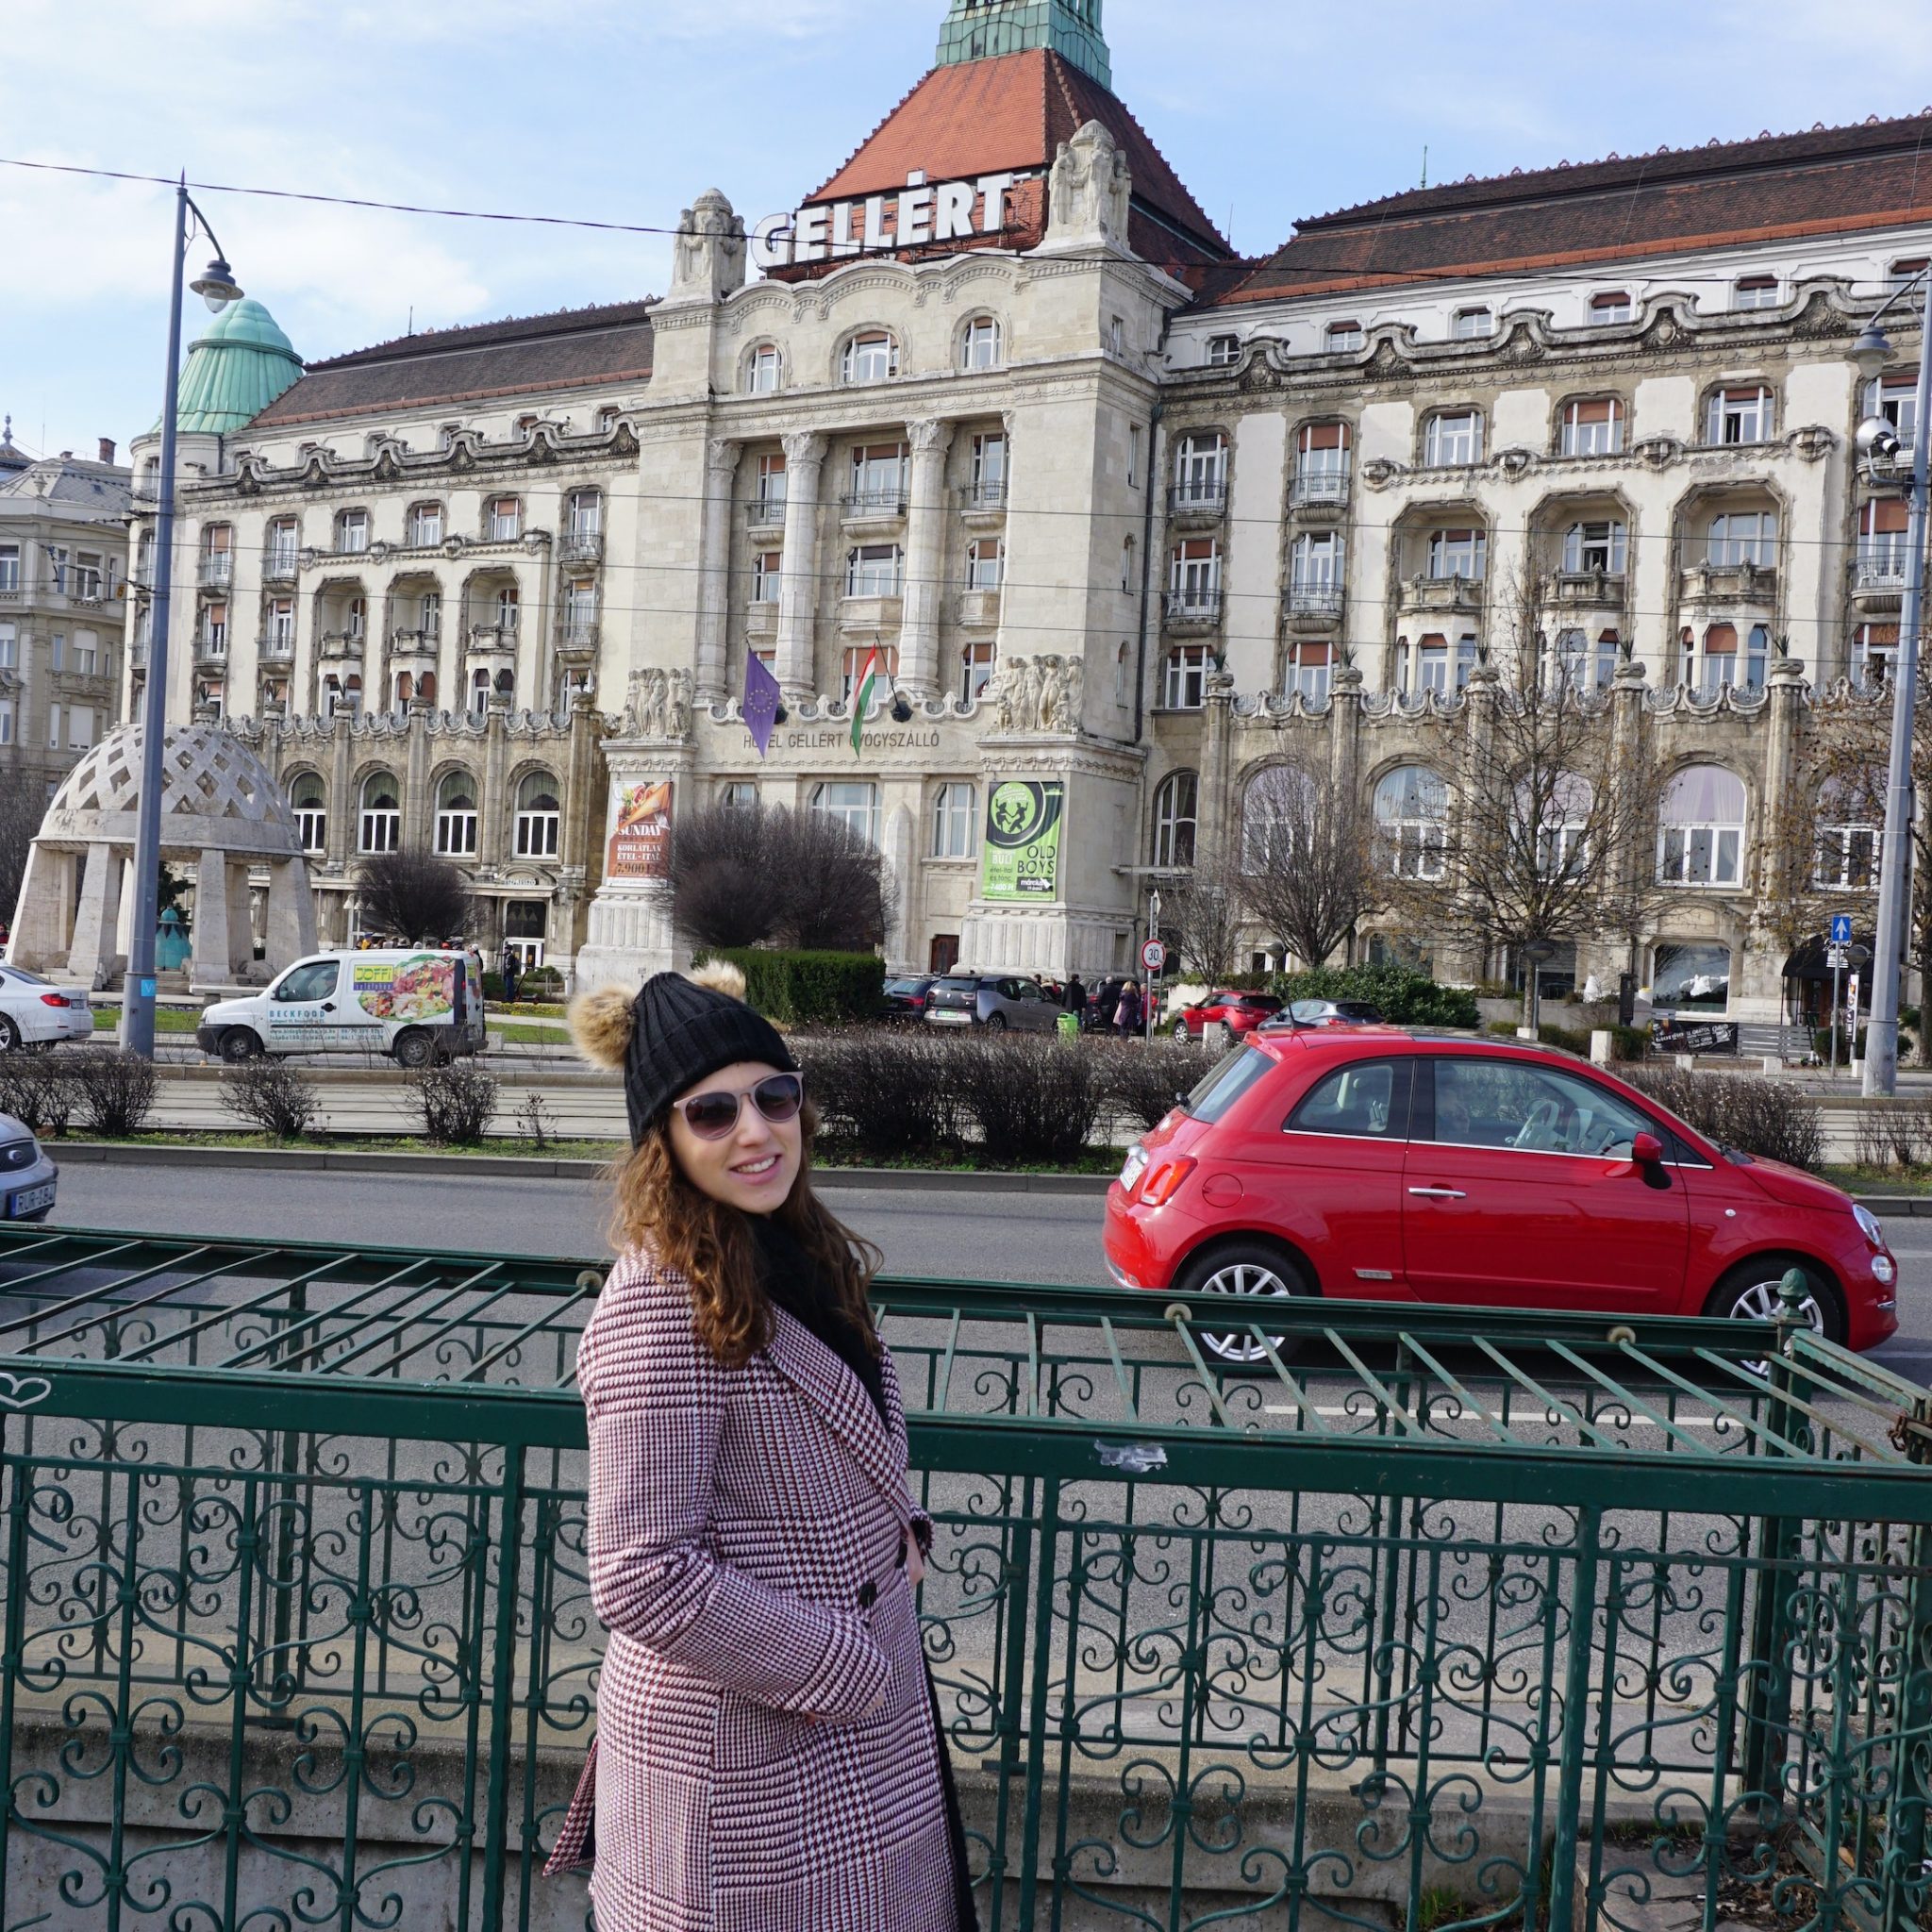 Itinerário Roteiro de 5 dias em Budapeste